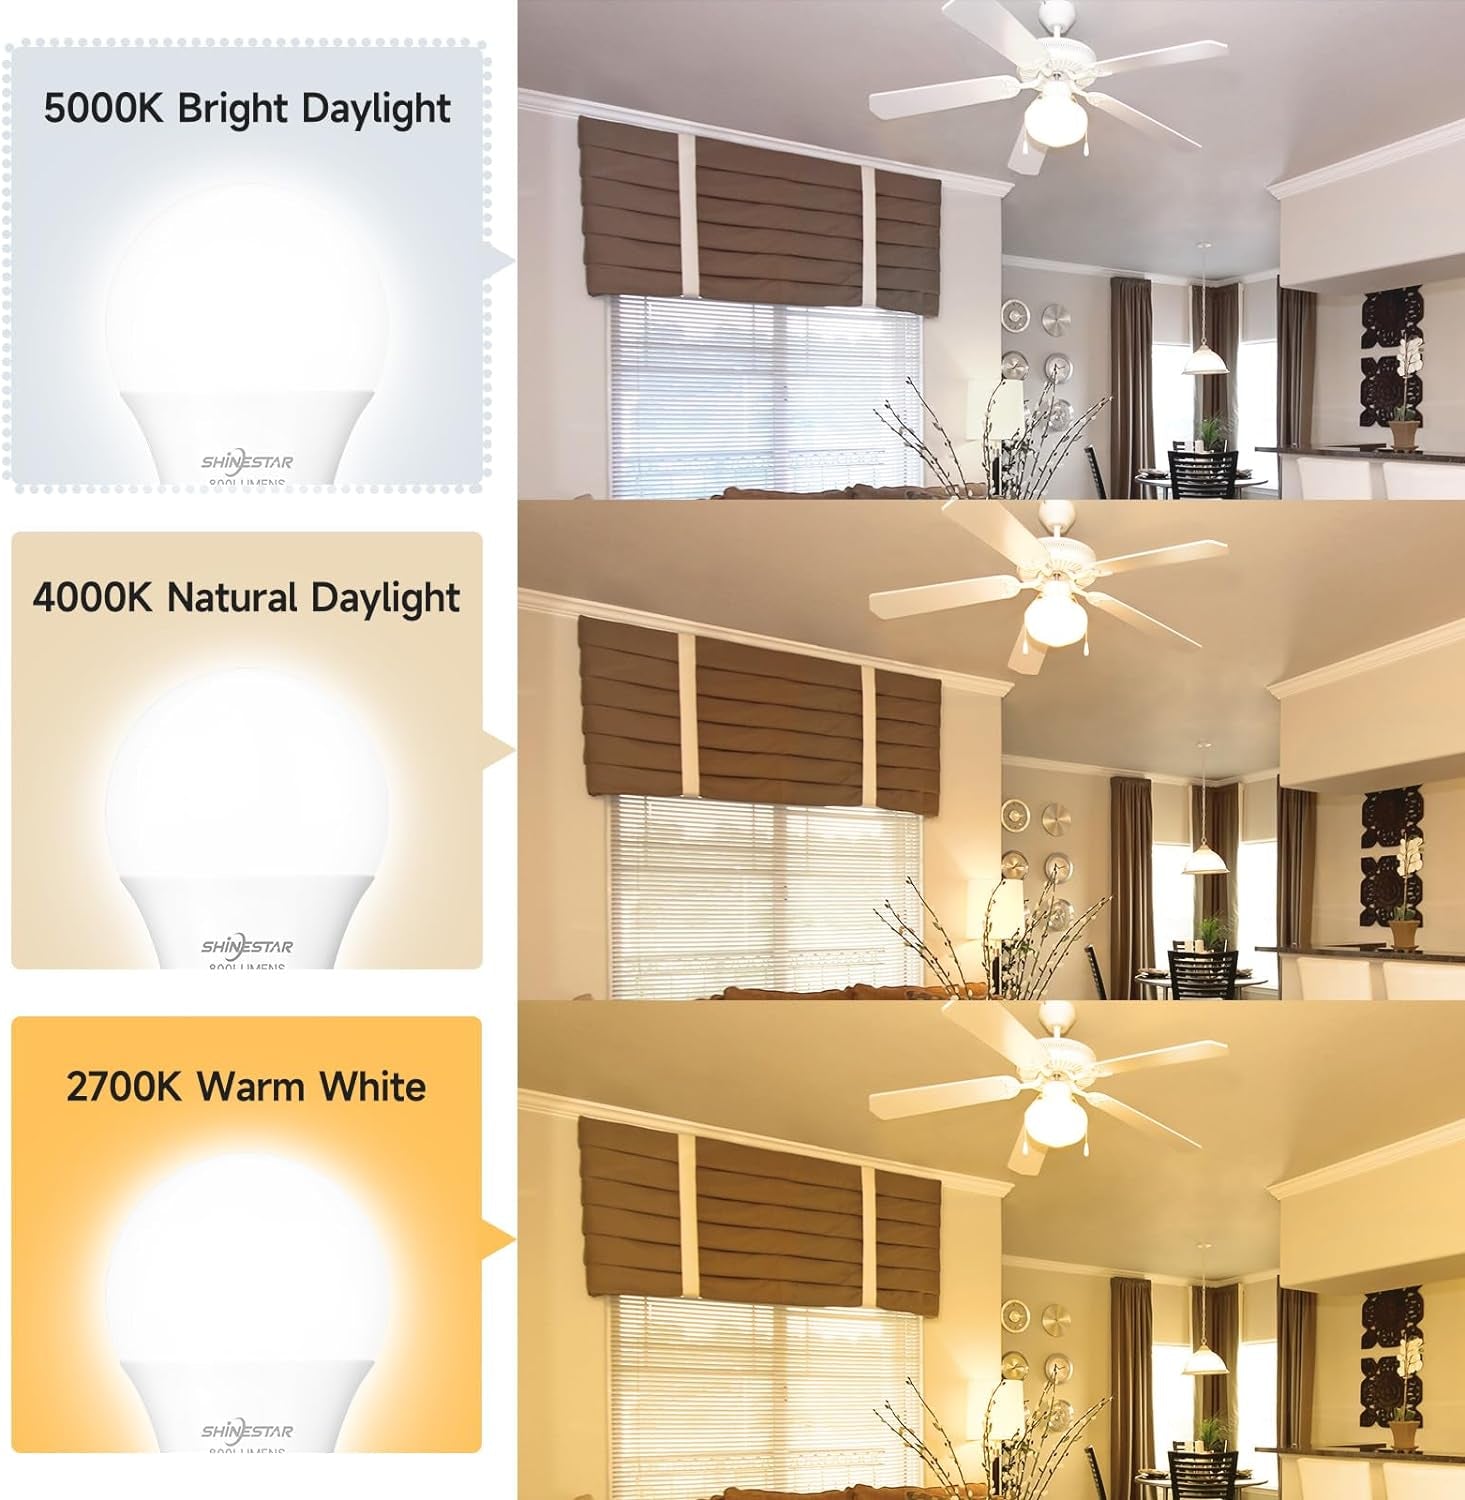 6-Pack Daylight Led Light Bulbs 60 Watt, Bright White 5000K, E26 A19 Led Bulb, Non-Dimmable